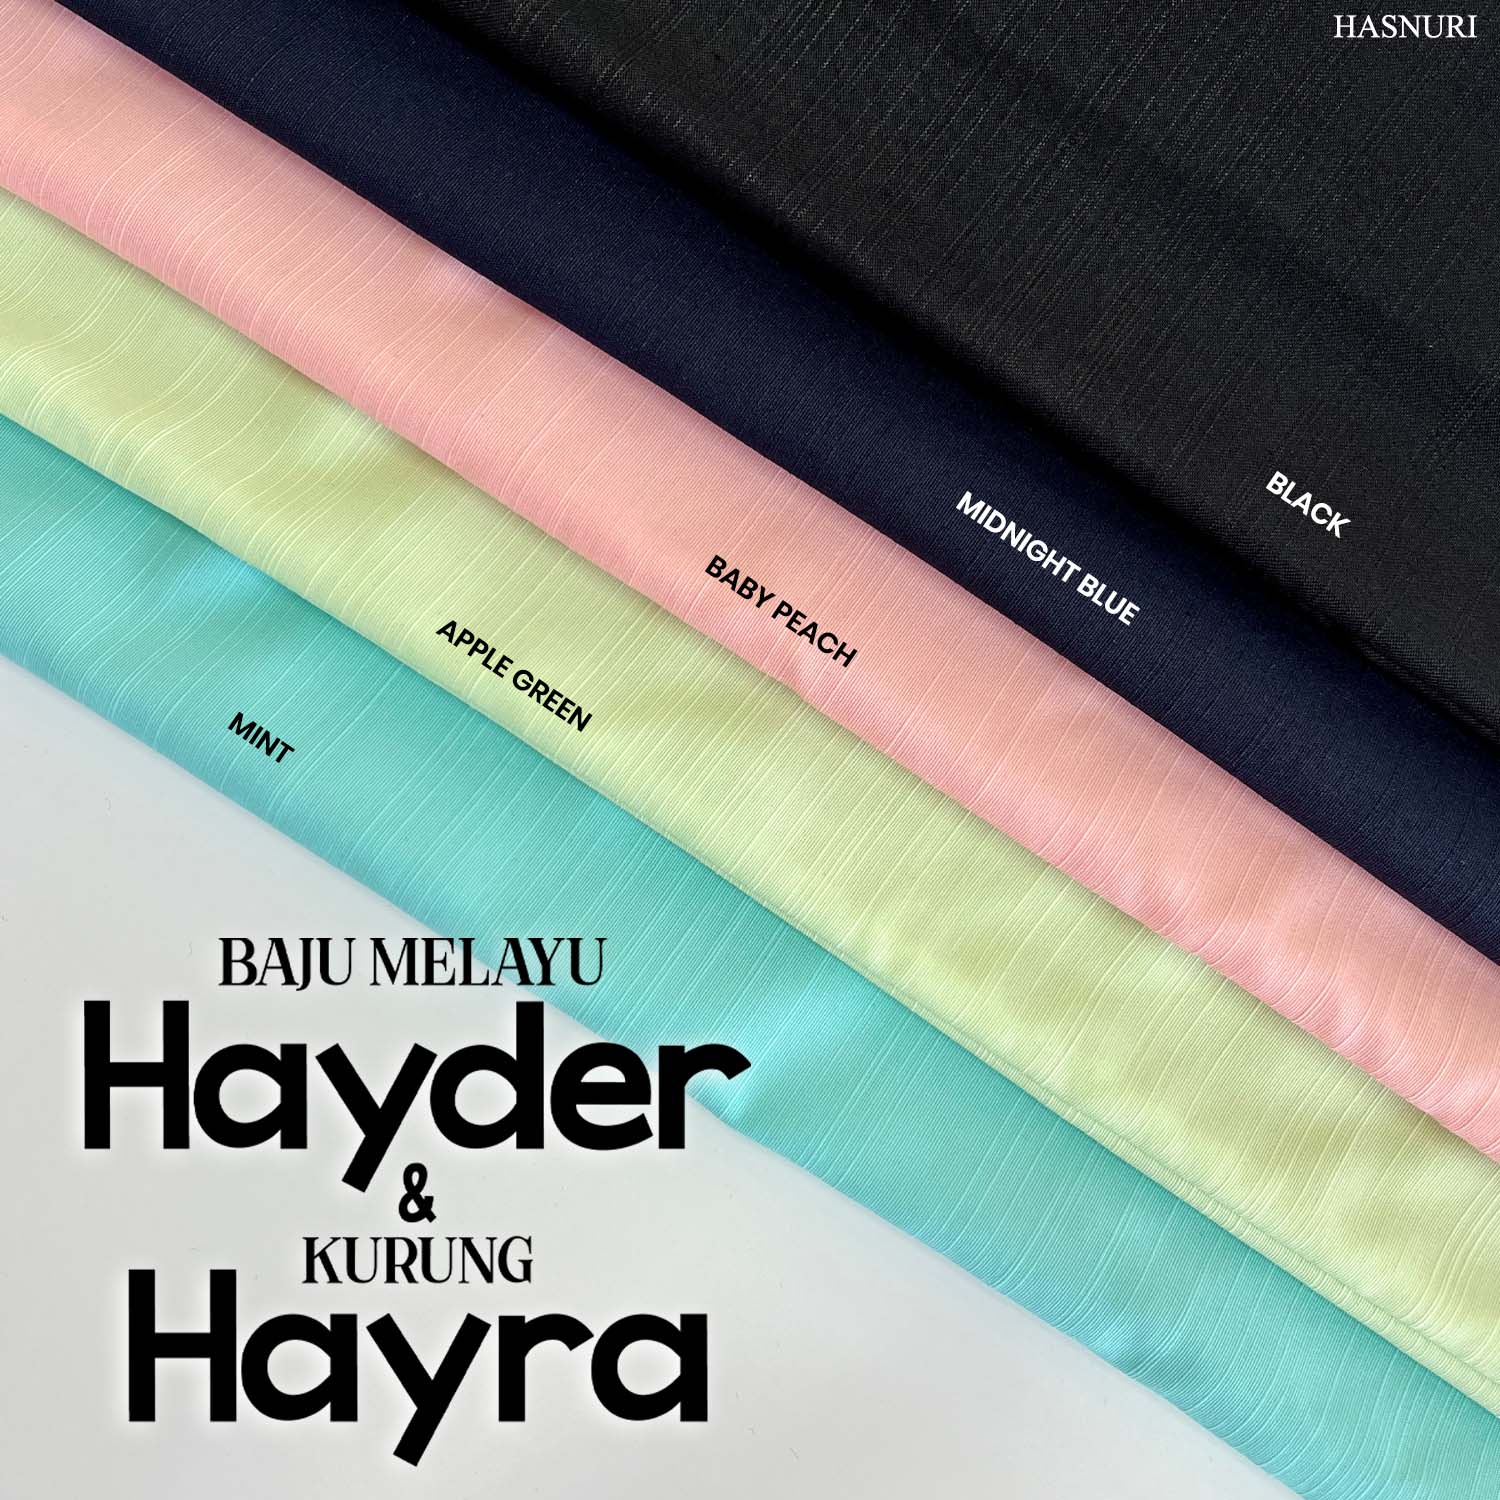 Baju Melayu Hayder - Midnight Blue